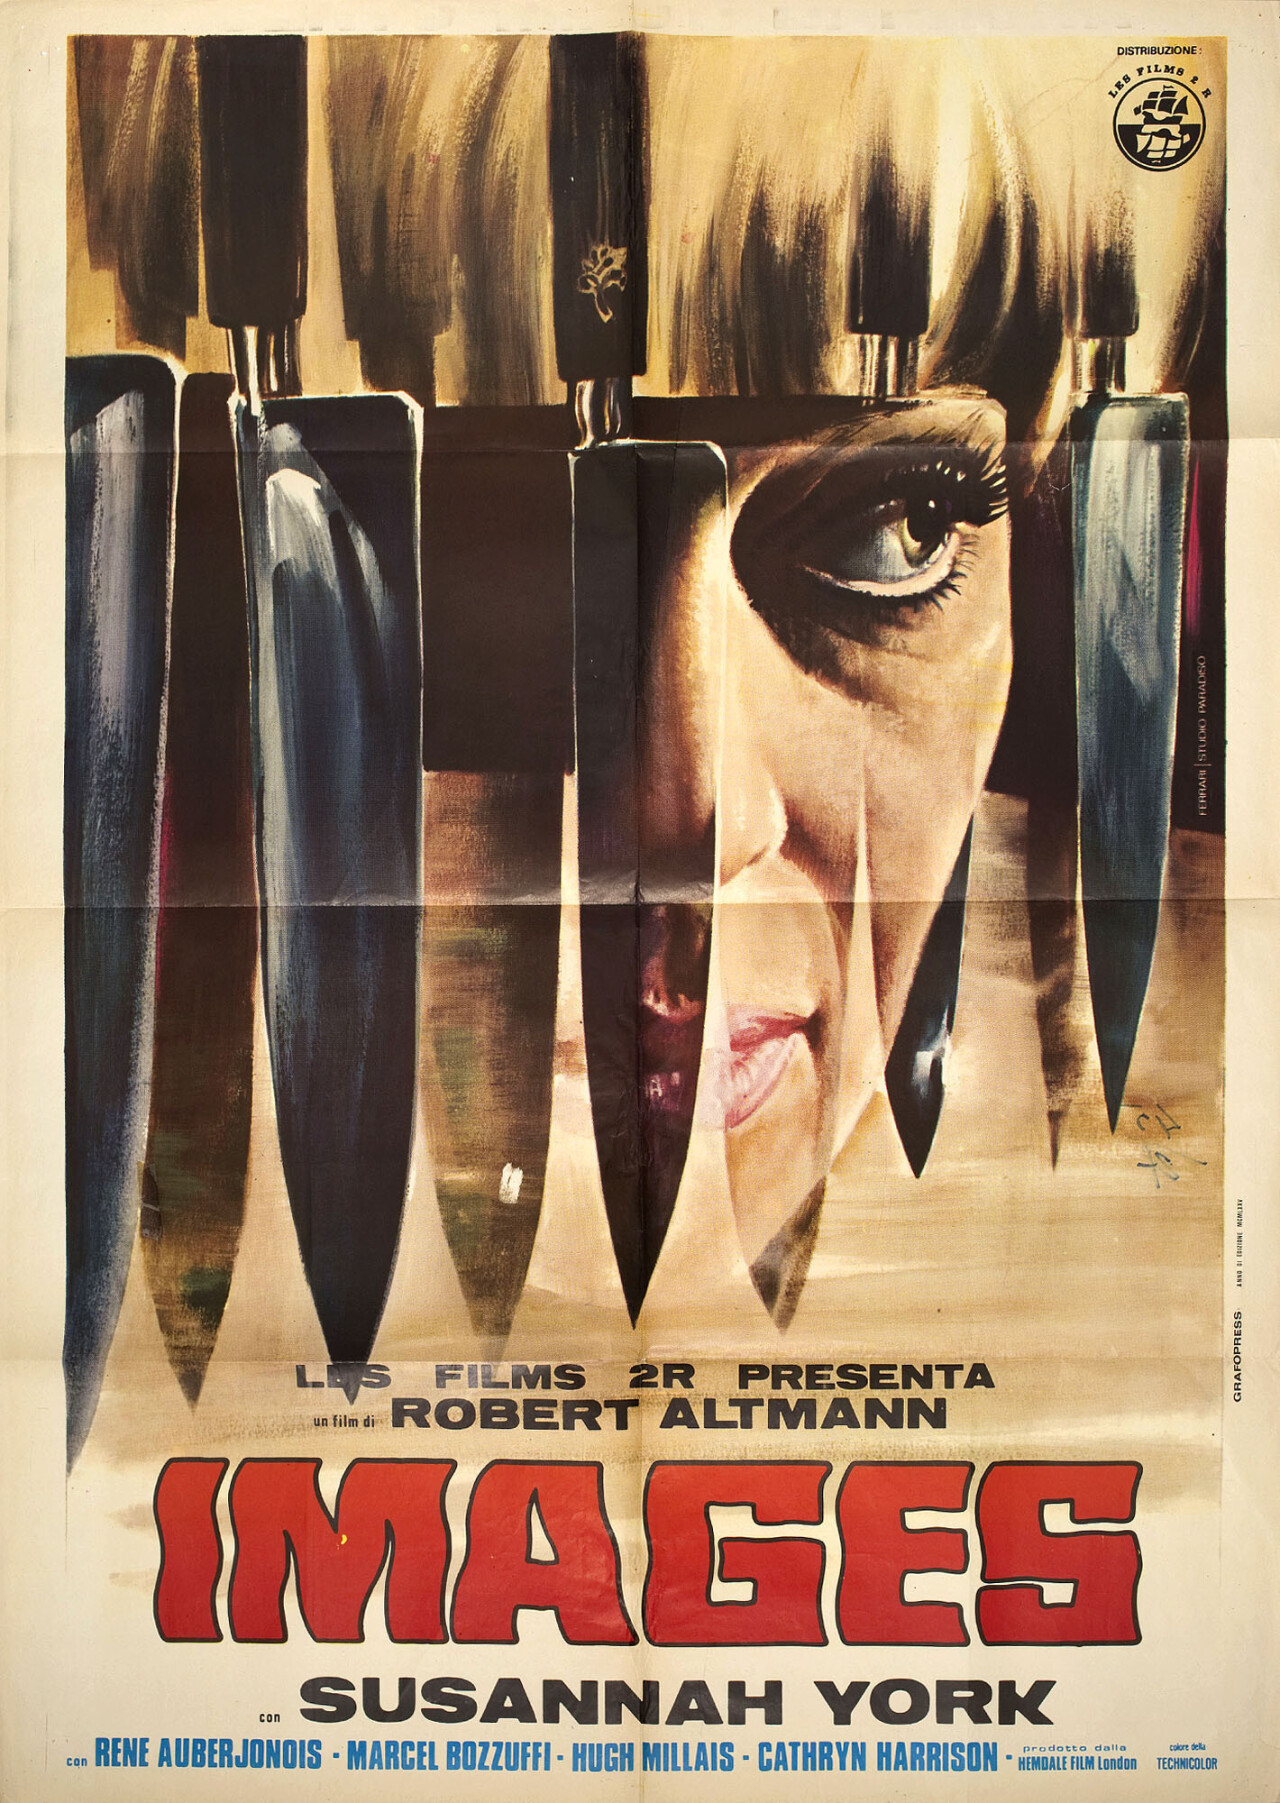 Видения (Images, 1972), режиссёр Роберт Альтман, итальянский постер к фильму, автор Феррари (ужасы, 1972 год)